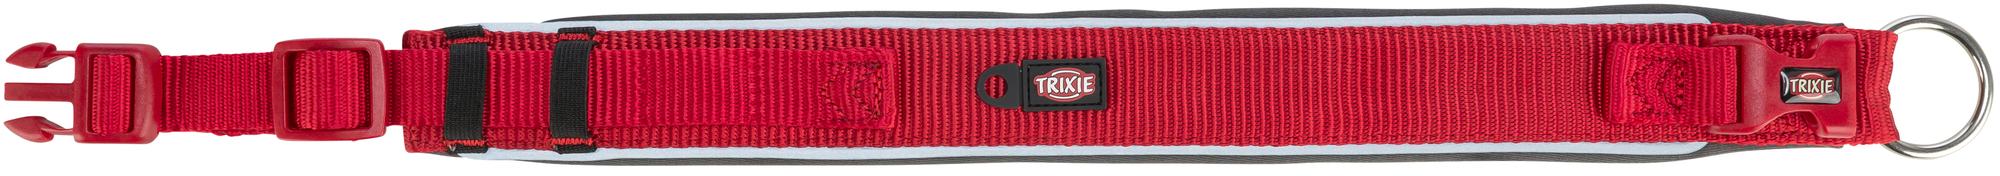 Collare Trixie Premium Extra Large - Rosso/Grigio Grafite